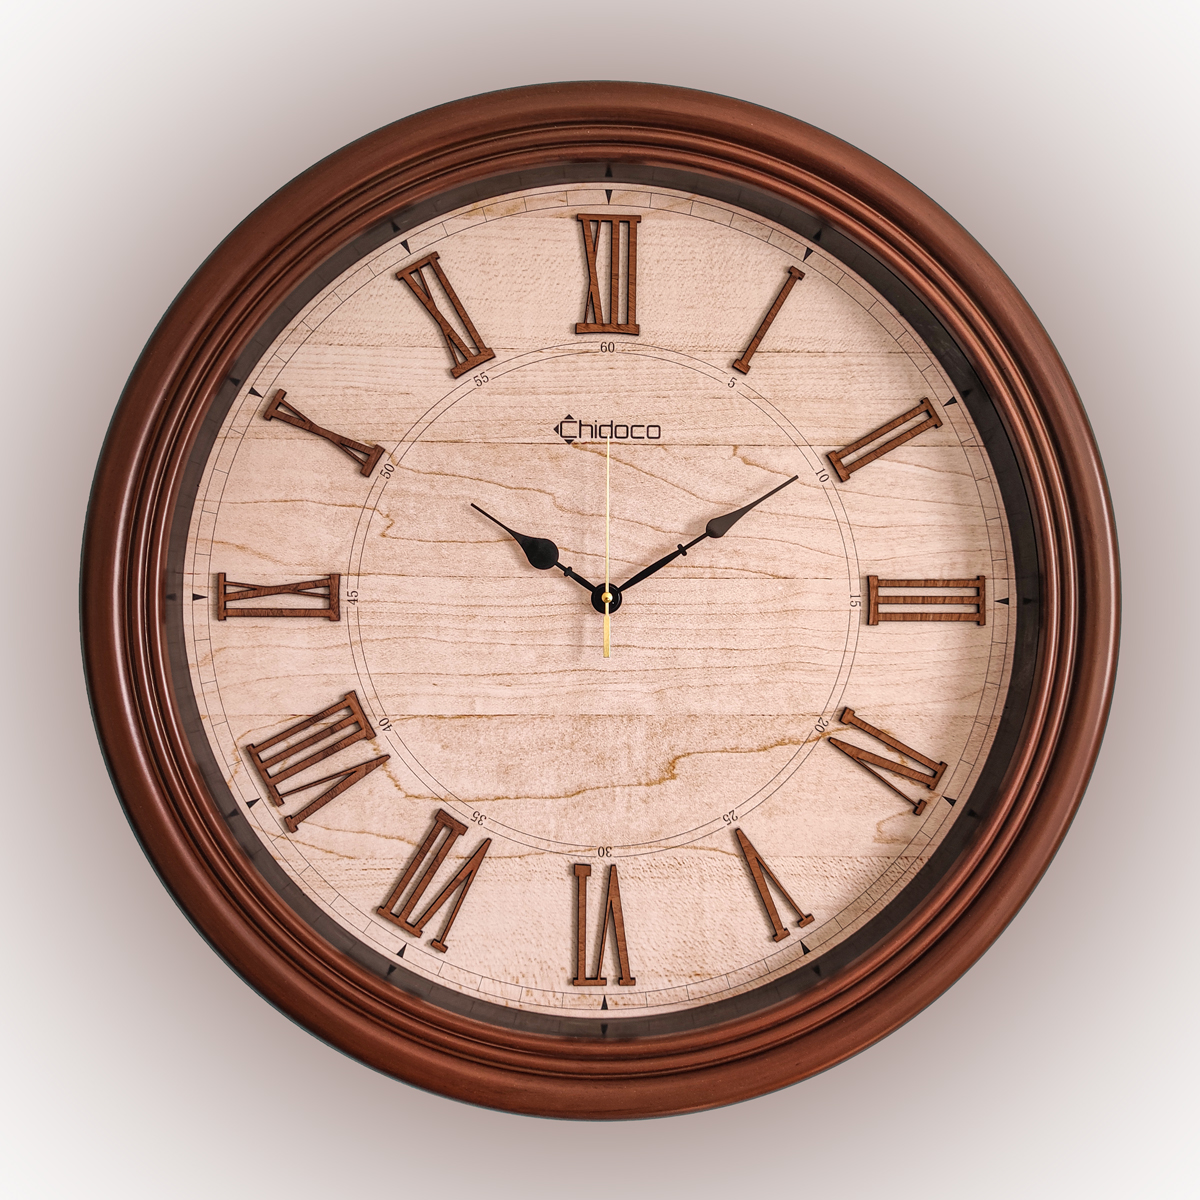 ساعت دیواری مدل چیدوکو طرح چوب کد C017